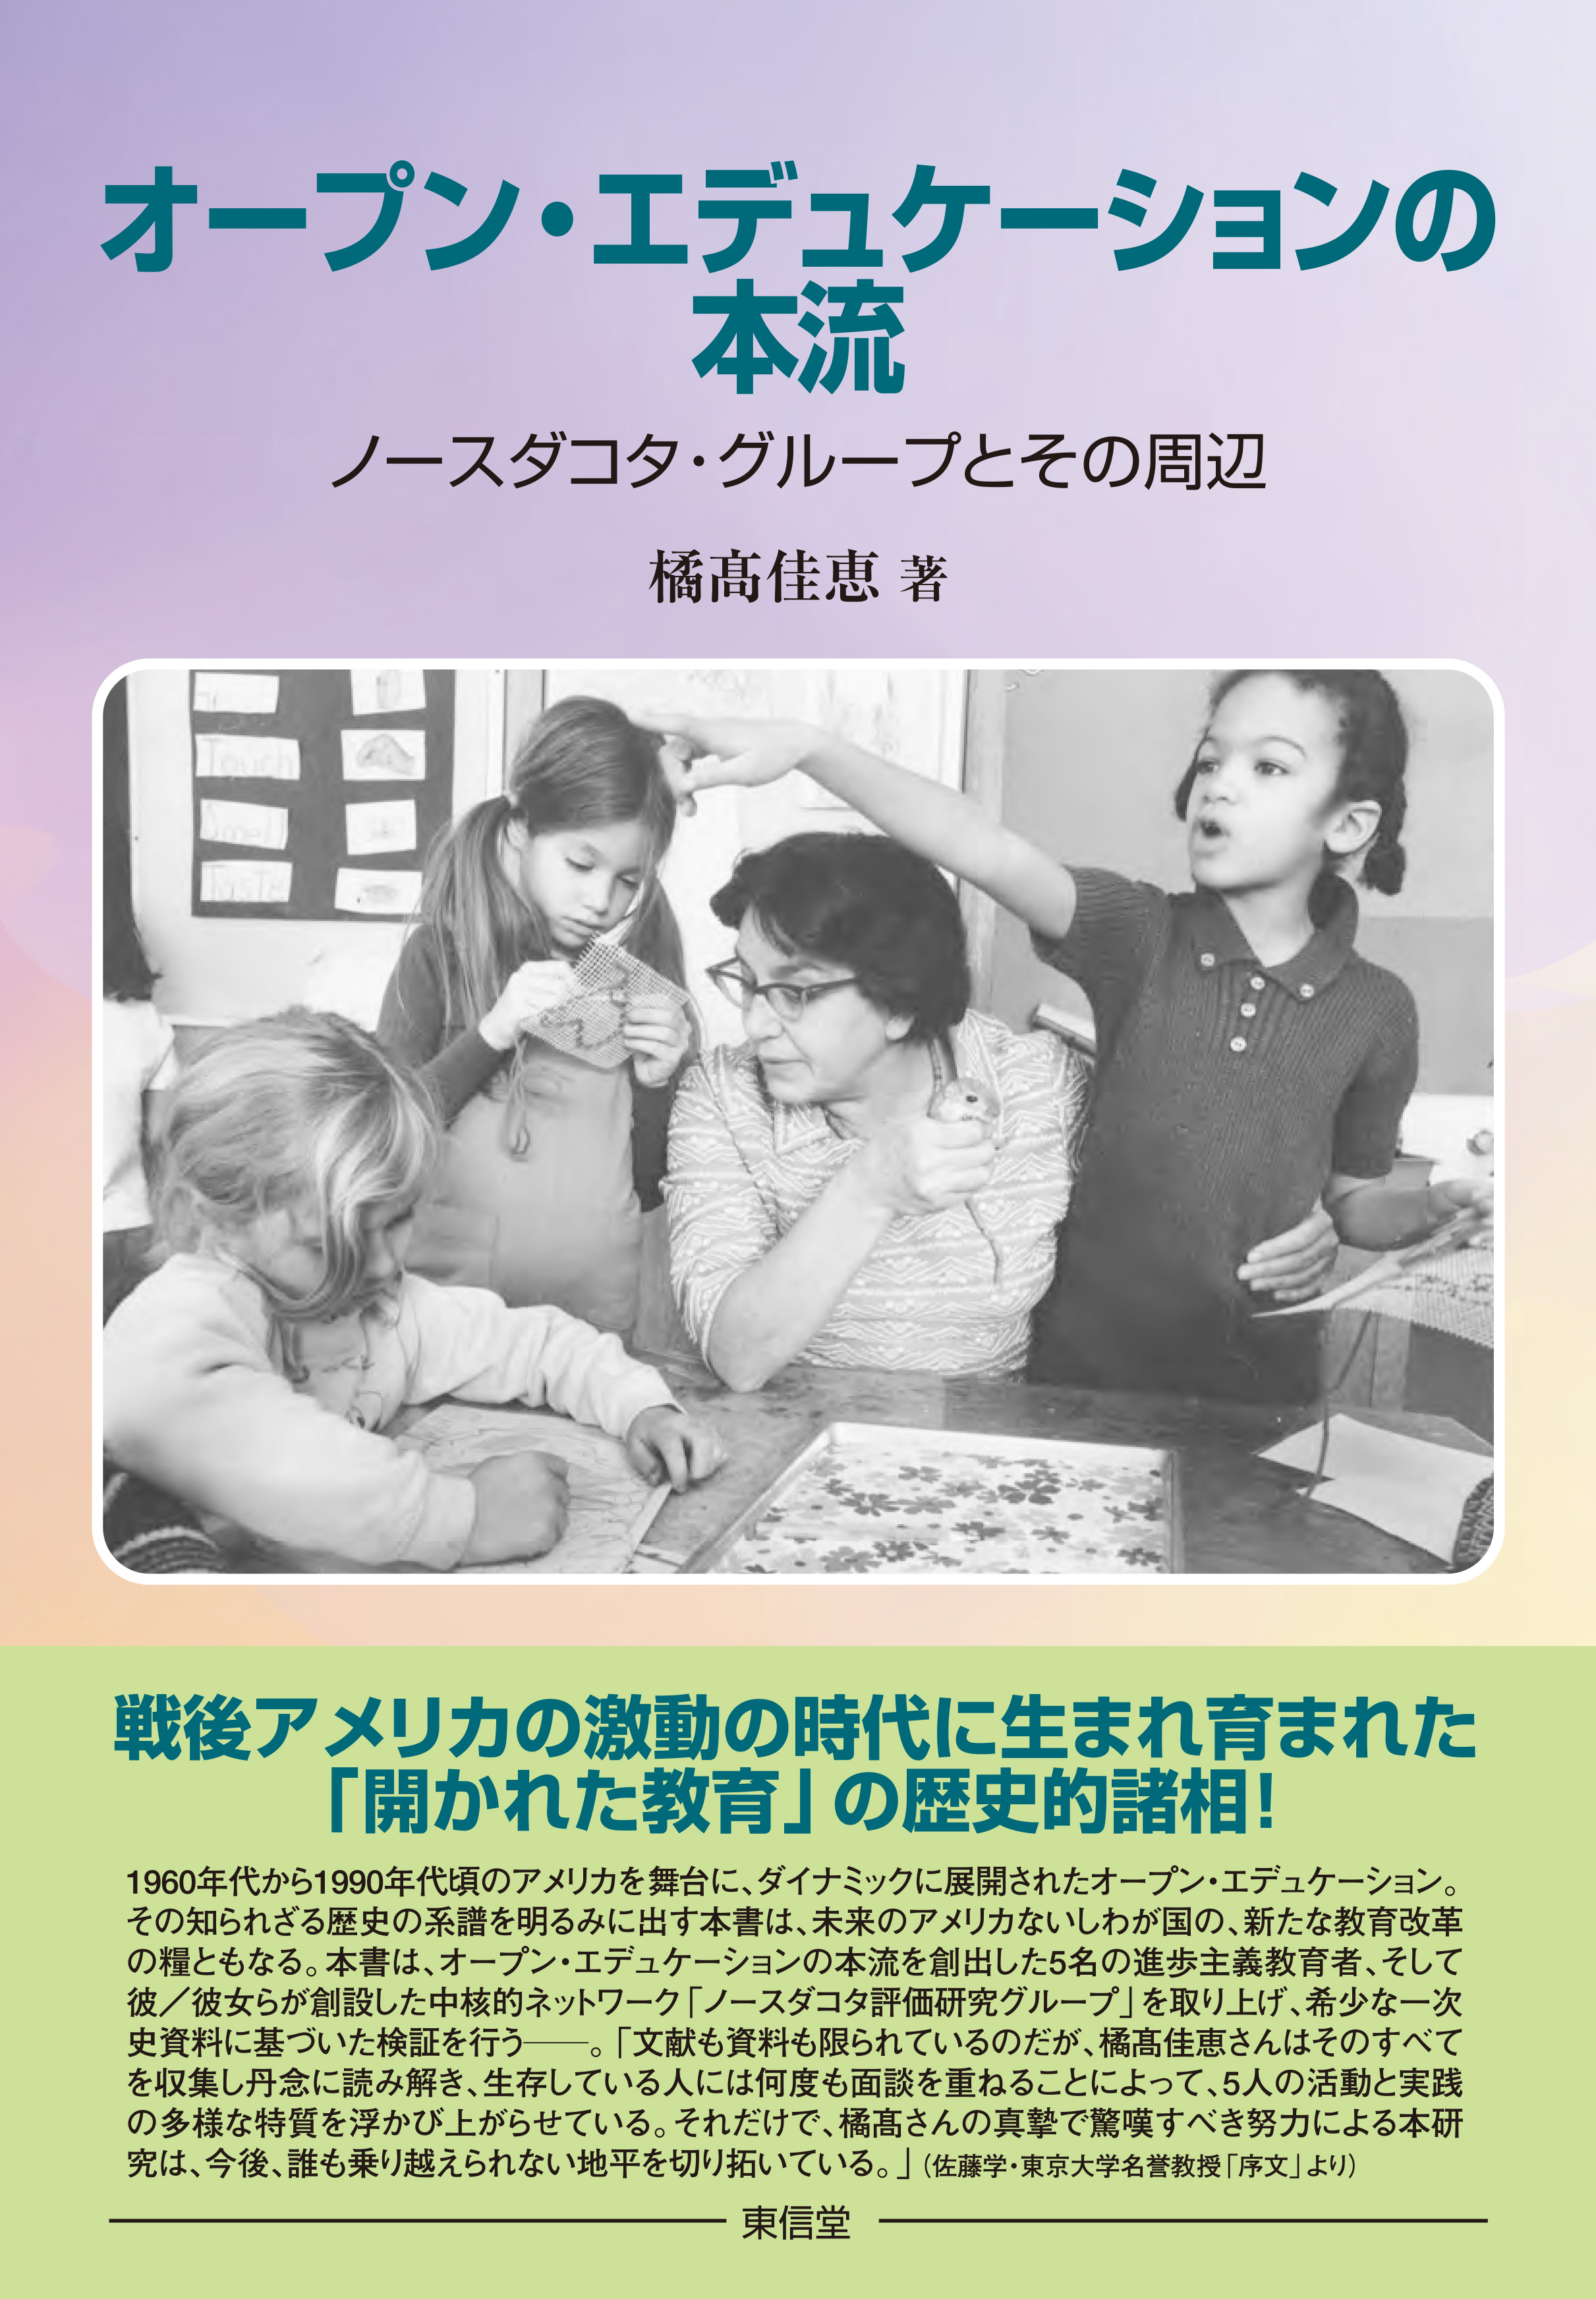 薄い紫と黄色の表紙に、外国人の子供3人と教師らしき成人女性がテーブルで何かを制作している写真